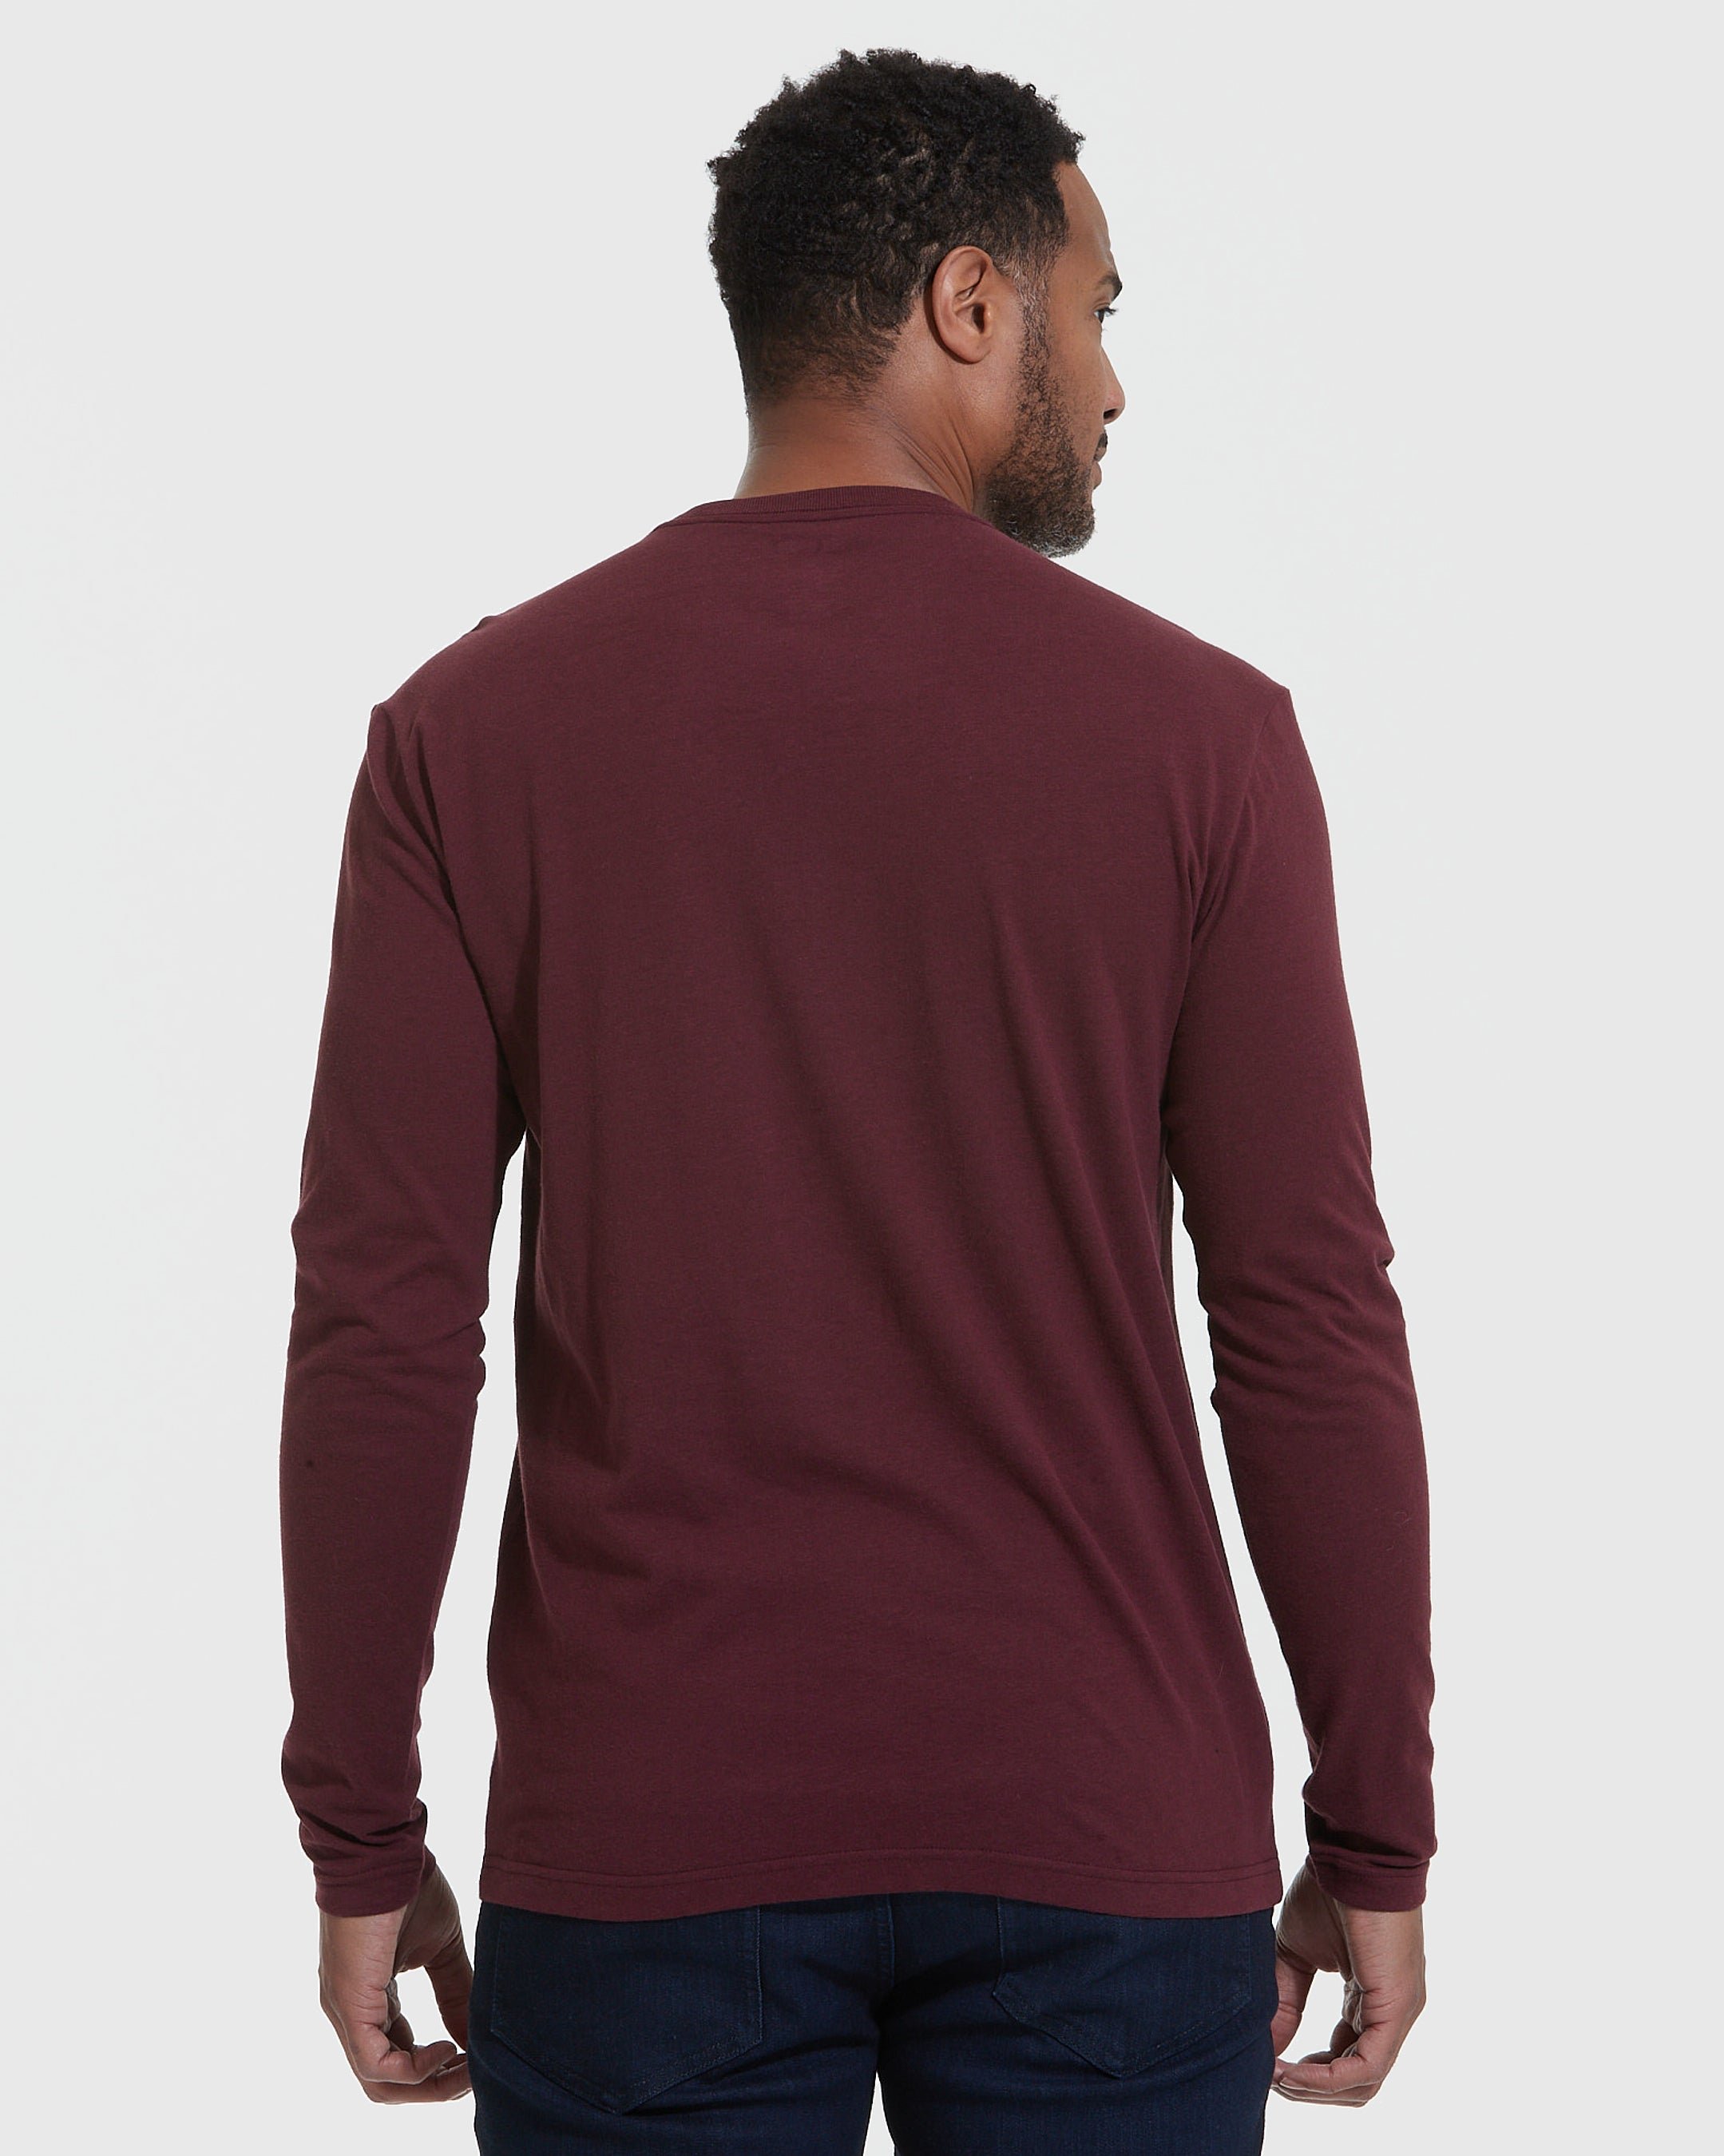 Mahogany Long Sleeve T-Shirt